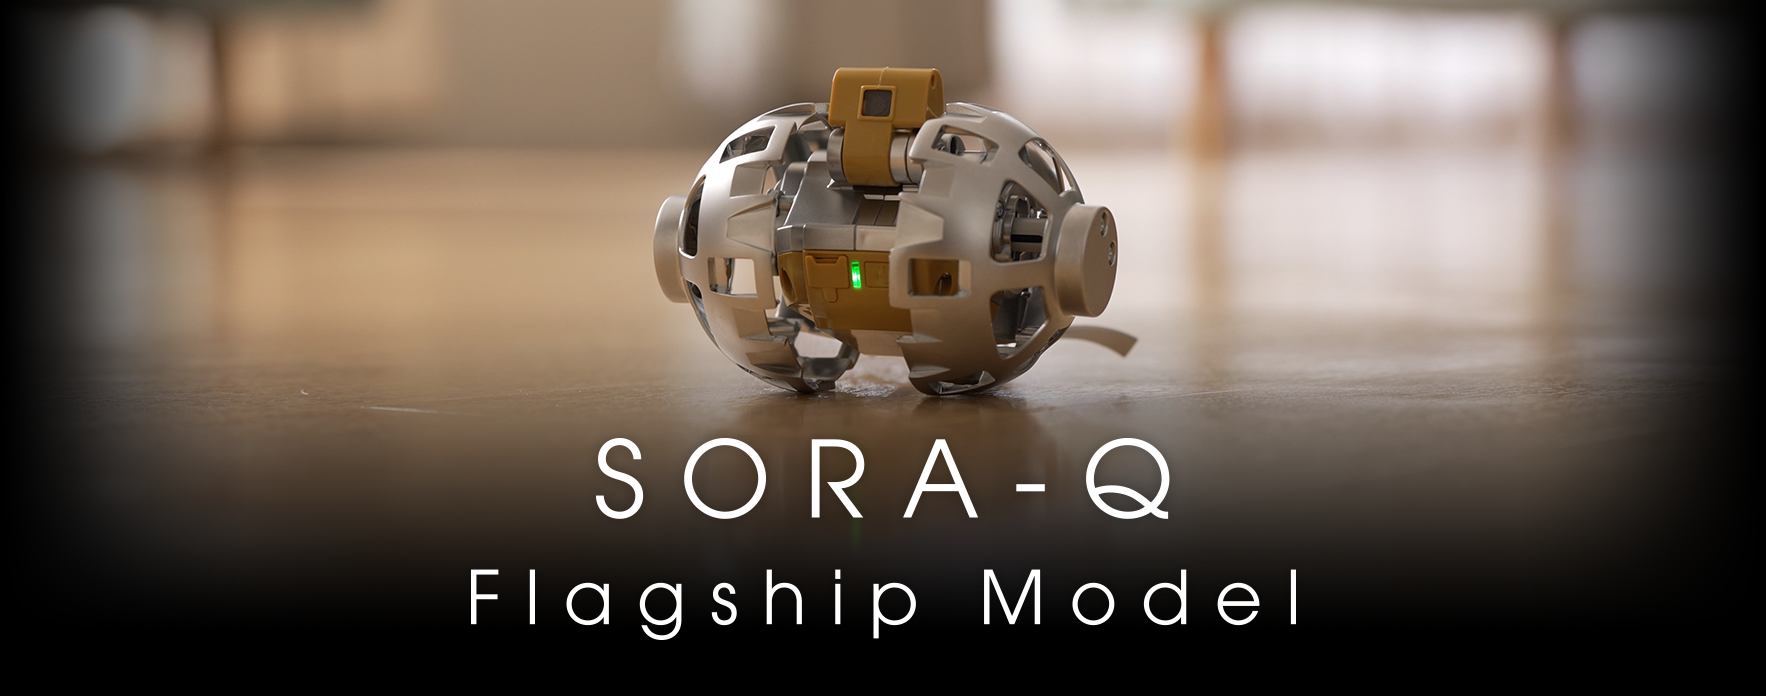 SORA-Q Flagship Model